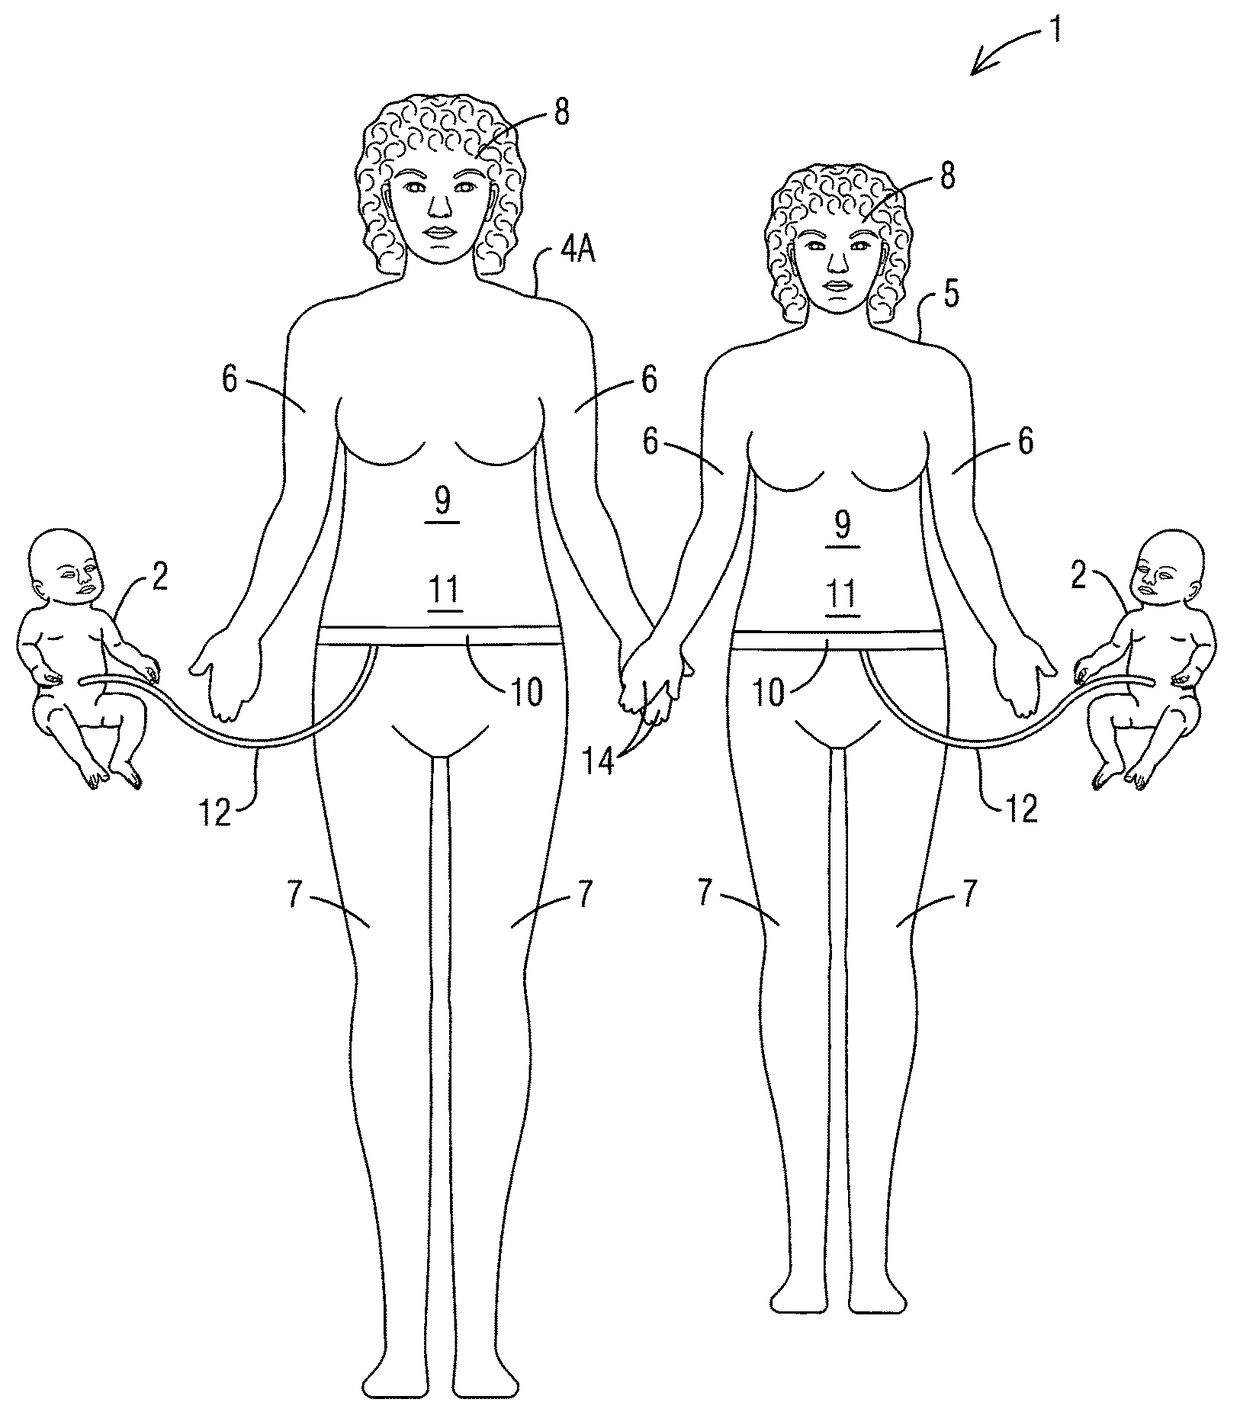 Pregnancy education dolls